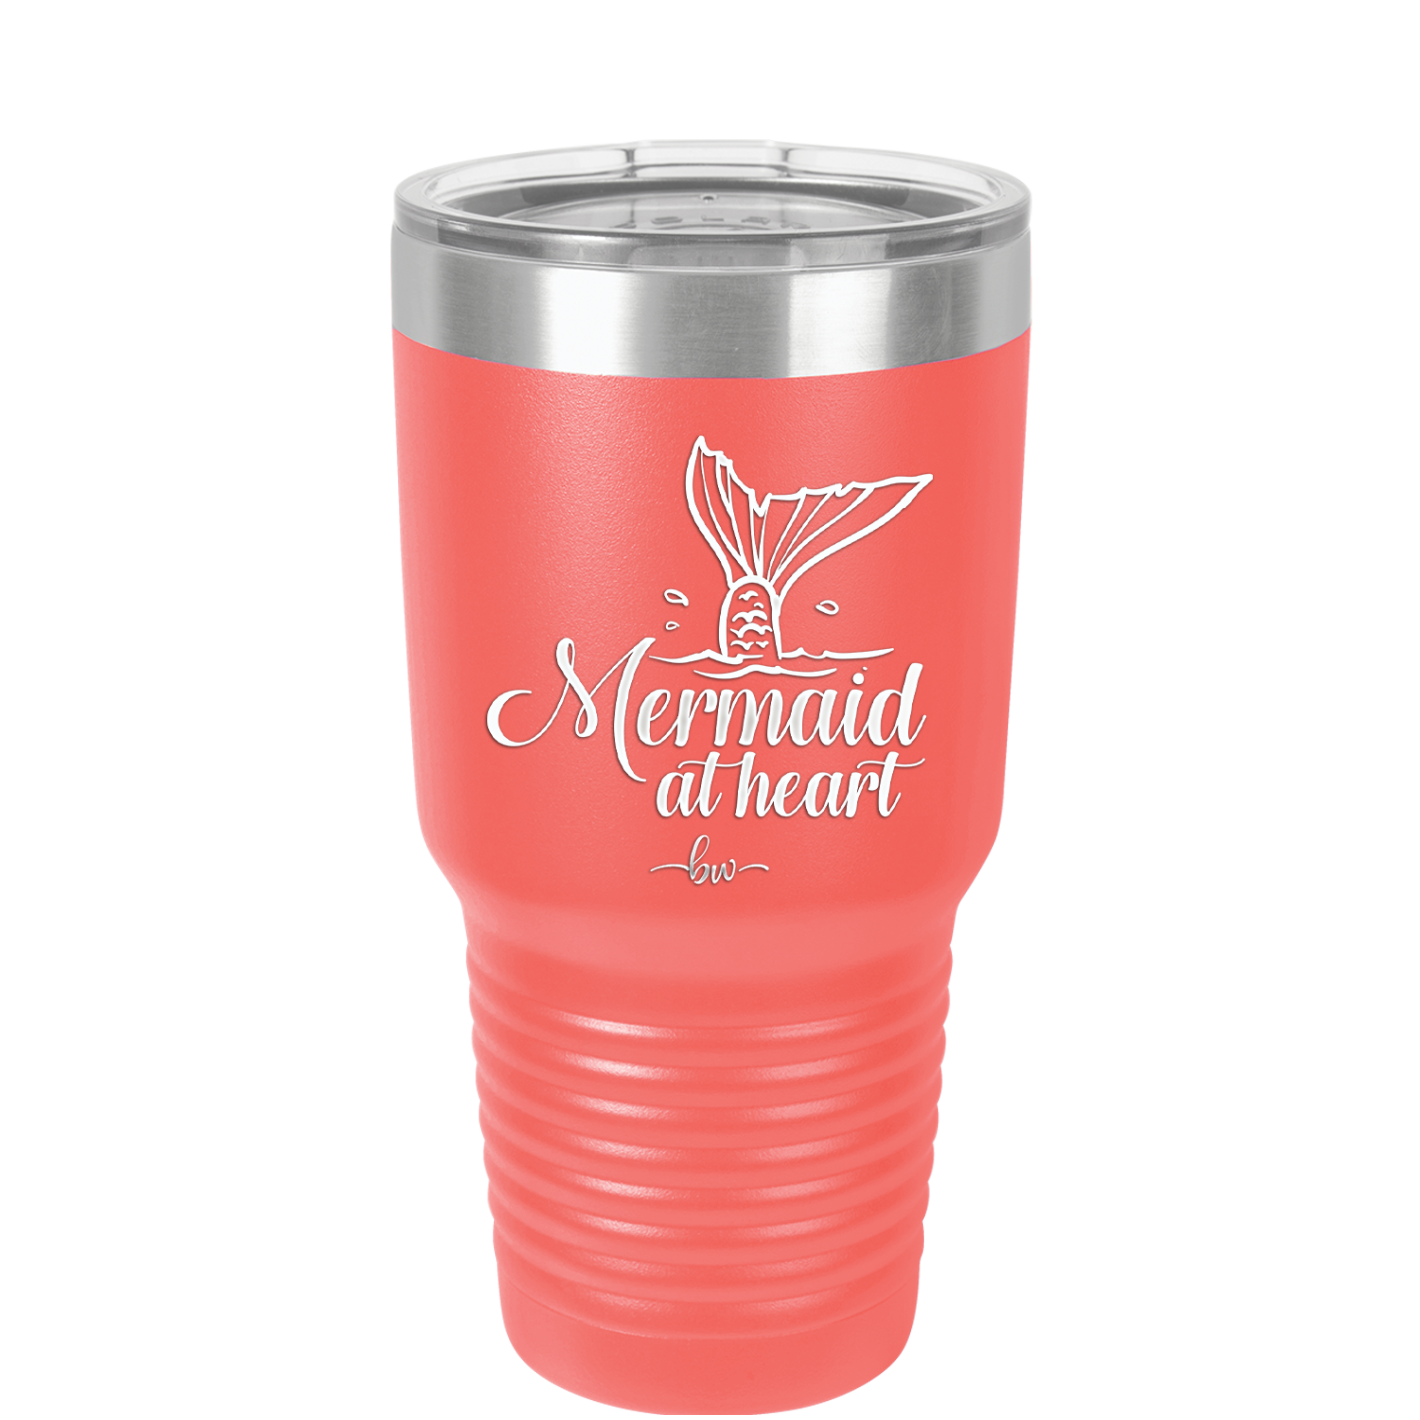 Mermaid at Heart - Laser Engraved Stainless Steel Drinkware - 2364 -